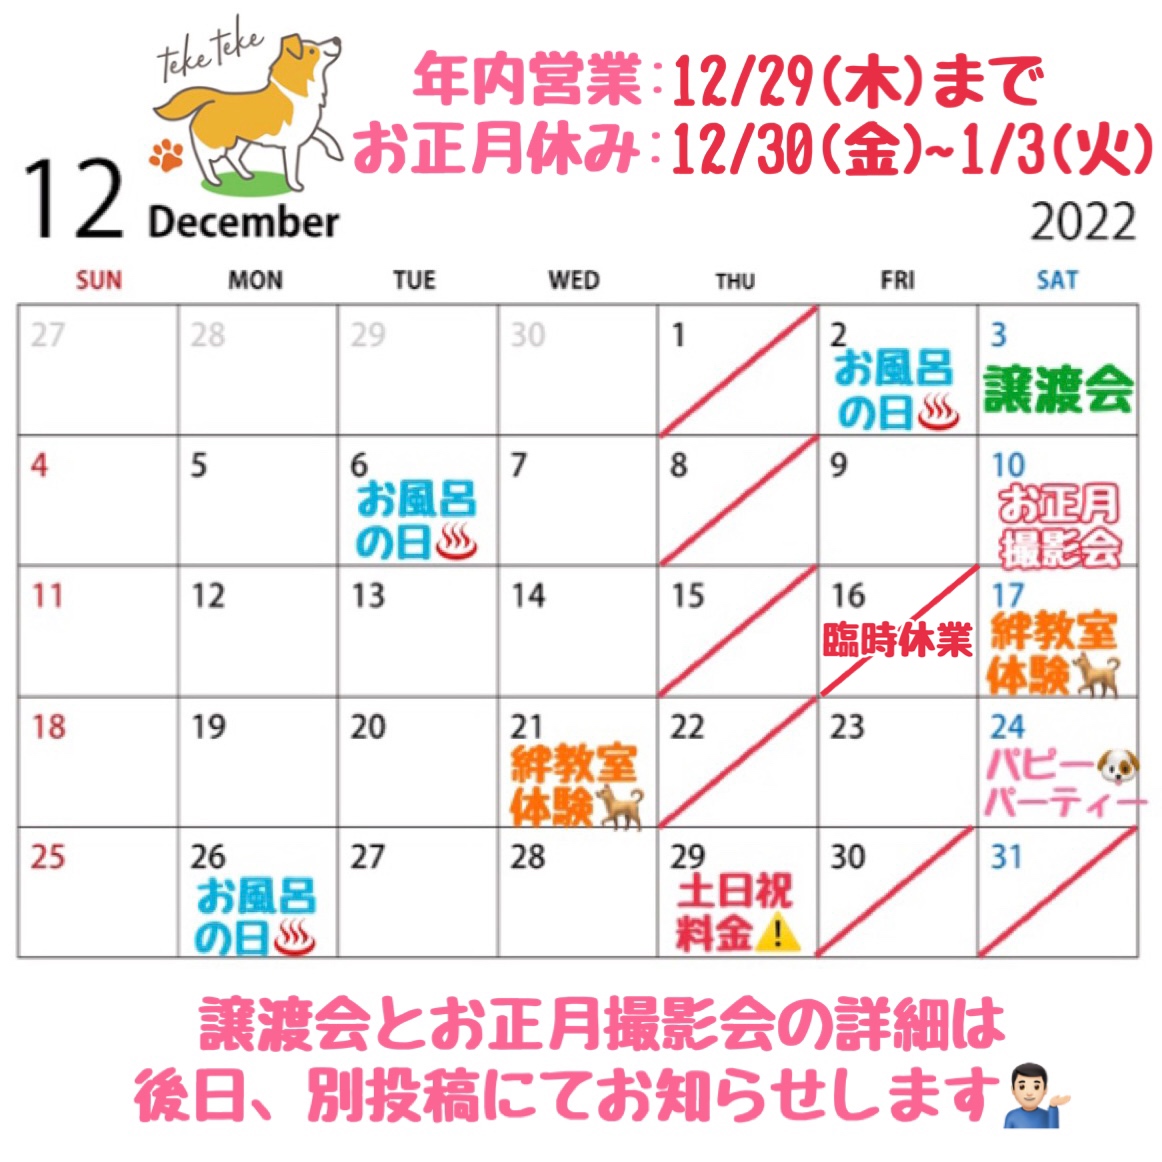 12月営業日カレンダーのお知らせです🎄